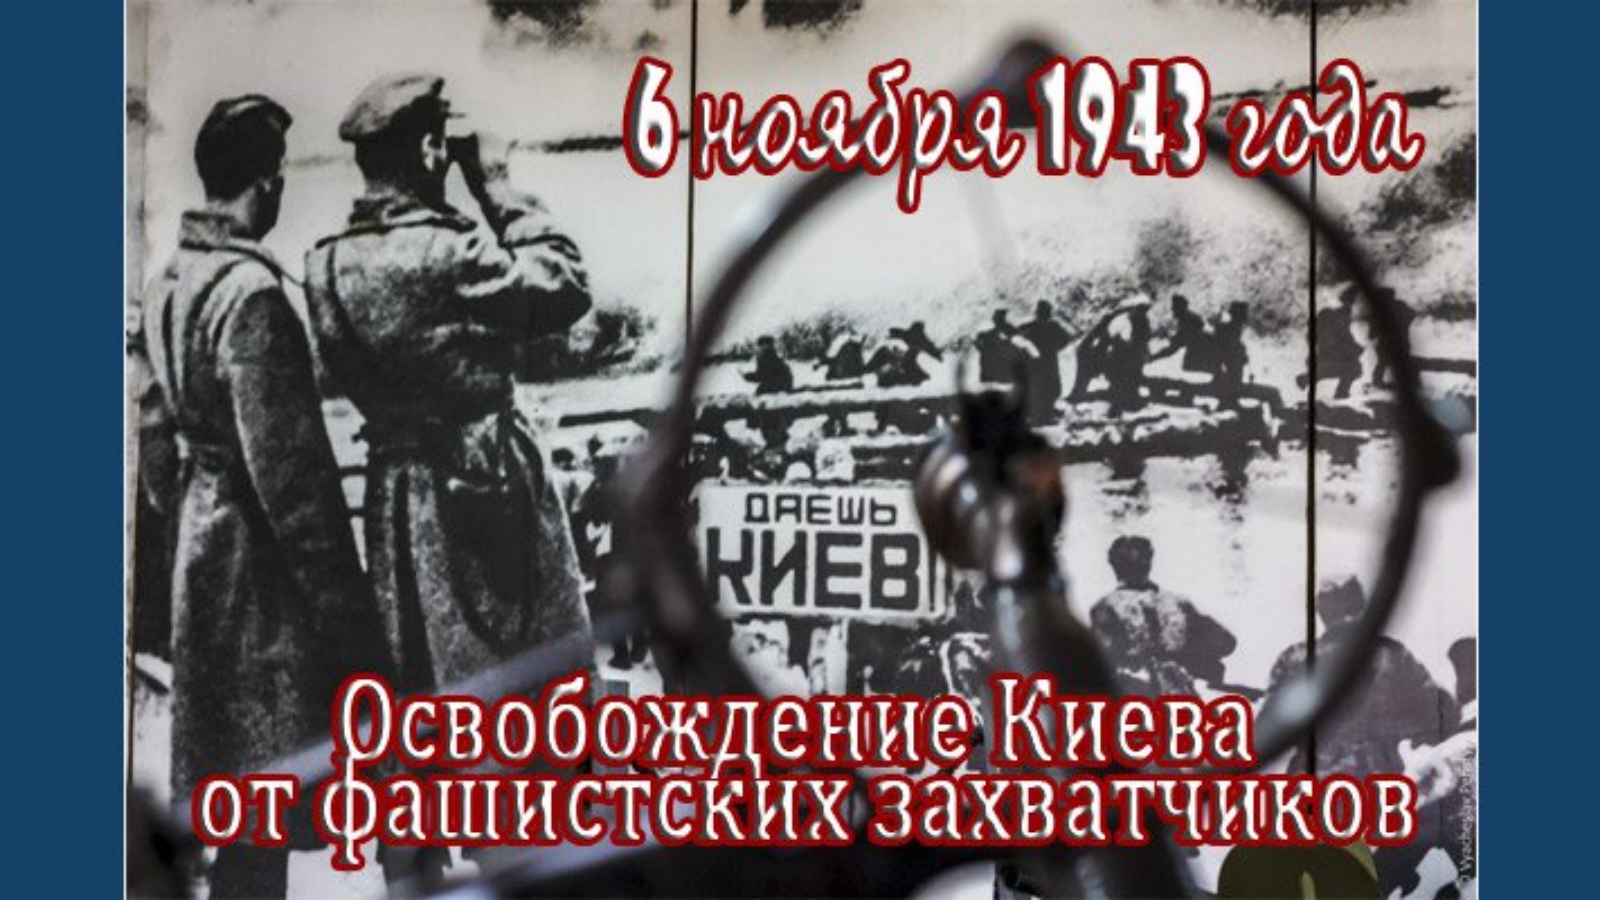 Дата освобождения киева. Освобождение Киева 6 ноября 1943. 6 Ноября 1943 г советские войска освободили Киев. Освобождение Киева от немецко-фашистских захватчиков. 6 Ноября 1943 года освободили Киев от фашистов.